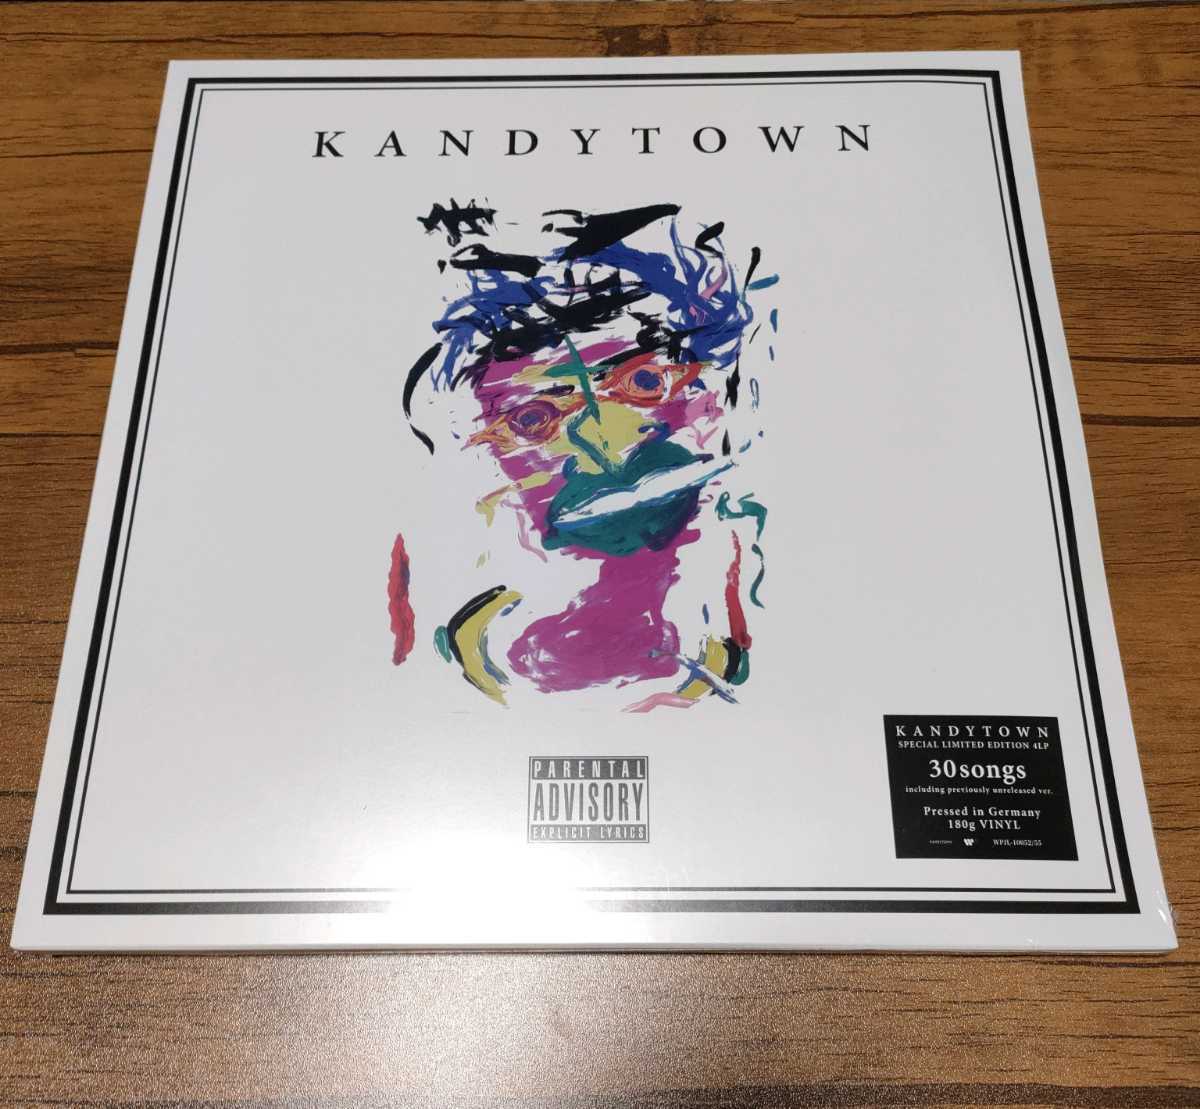 KANDYTOWN 1st アルバム 4LP 数量限定生産盤 レコード アナログ 邦楽 国内在庫あり